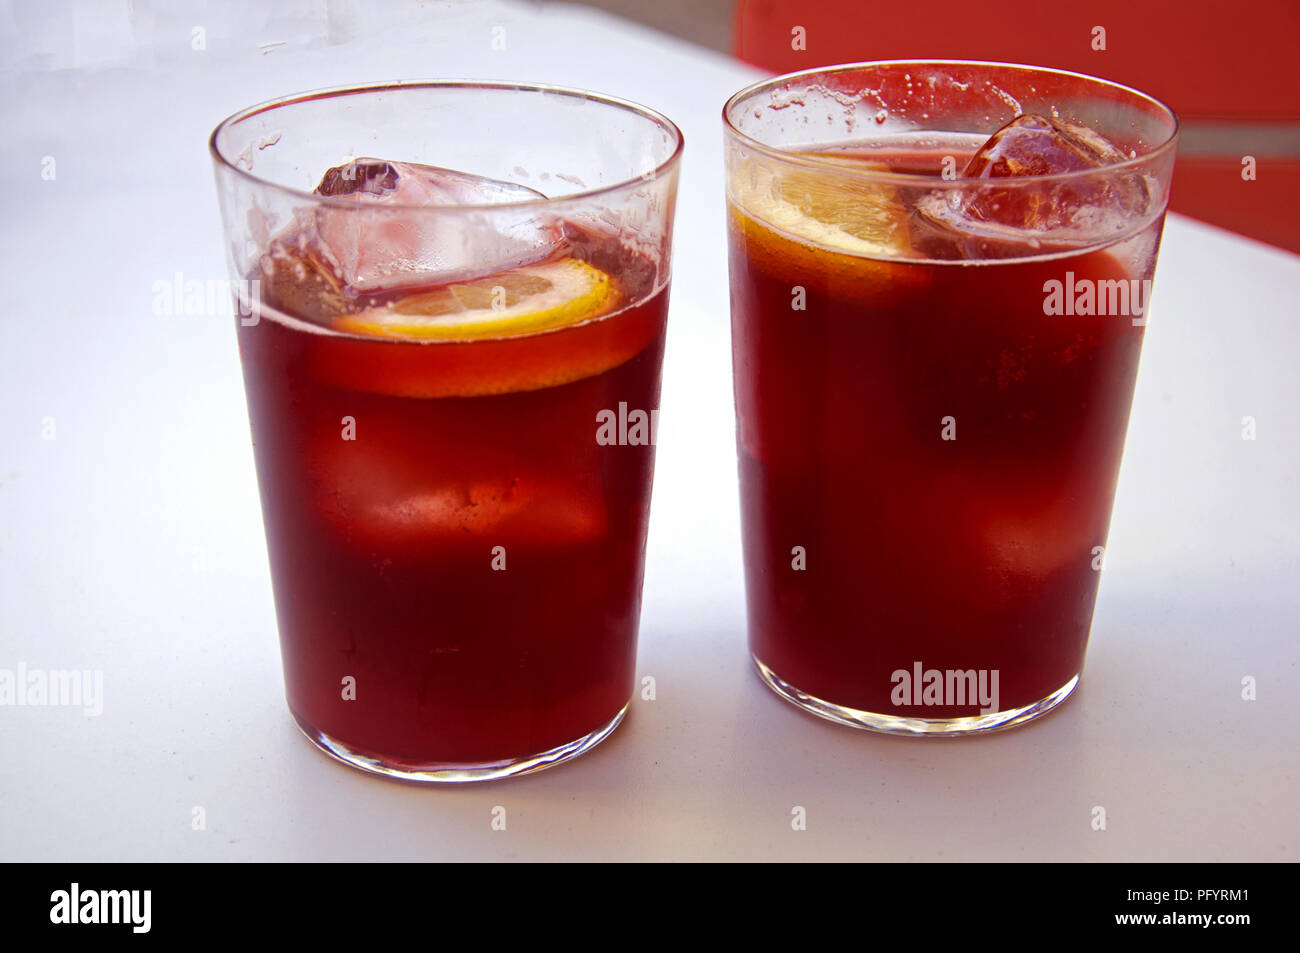 Deux verres à cocktail vigne tinto de verano, le citron et la glace, l'été, l'Espagne Banque D'Images